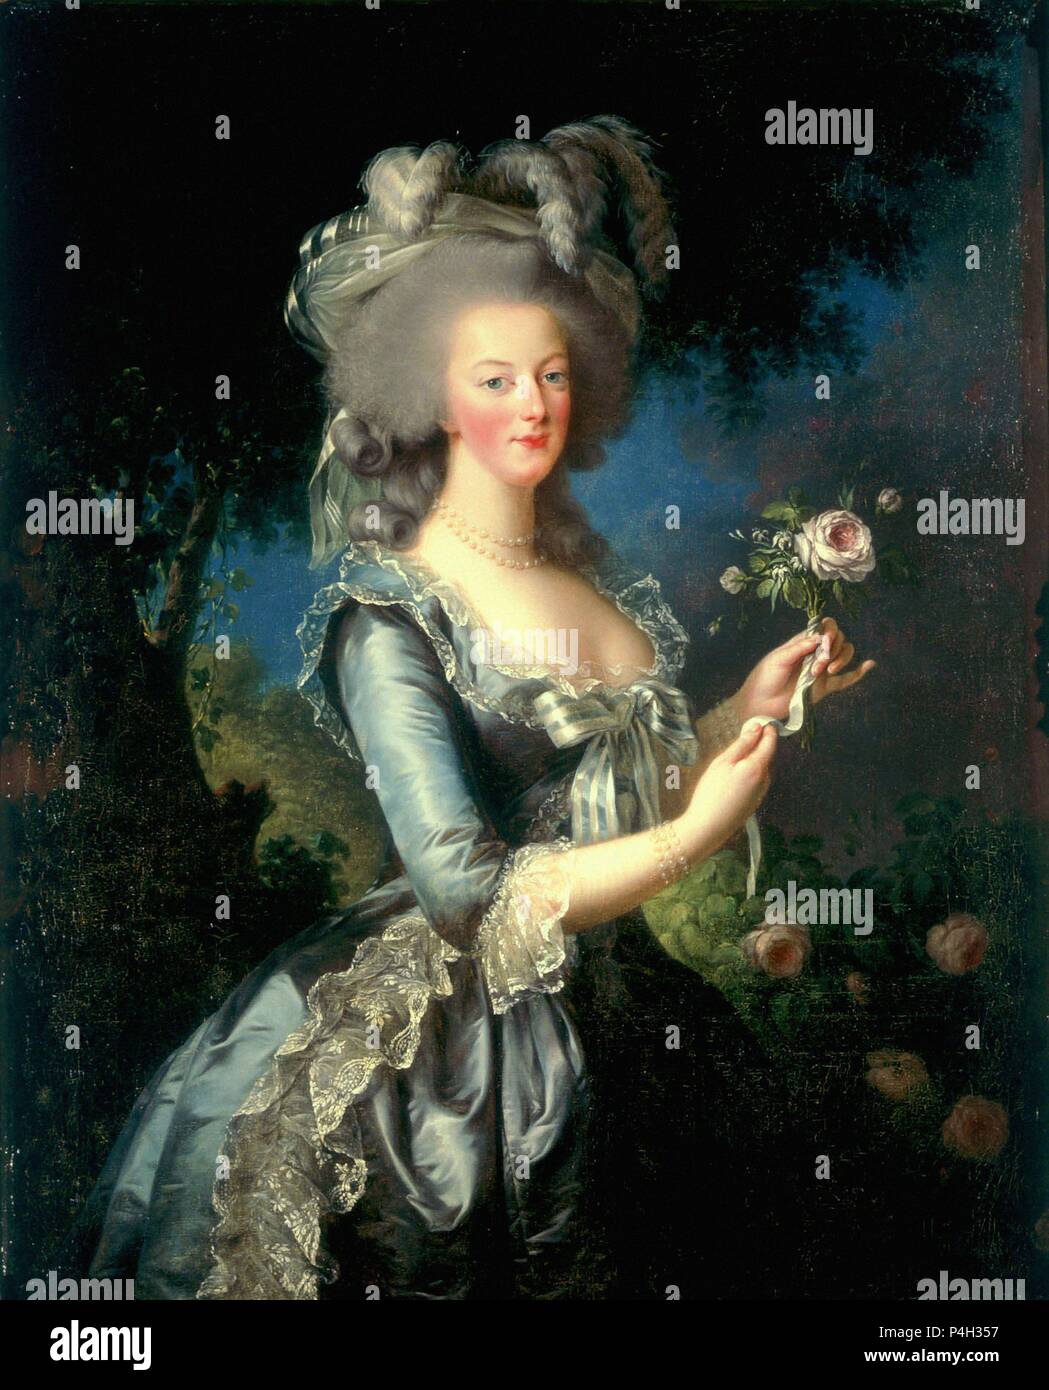 'Actions Marie-Antoinette à la Rose", 1783, huile sur toile, 130 x 87 cm. Auteur : Louise Élisabeth Vigée Le Brun (1755-1842). Emplacement : MUSEO PALACIO, Versailles, France. Aussi connu sous : RETRATO DE MARIA ANTONIETA DE L'Autriche (1755-1793) REINE DE FRANCIA CON UNA ROSA. Banque D'Images